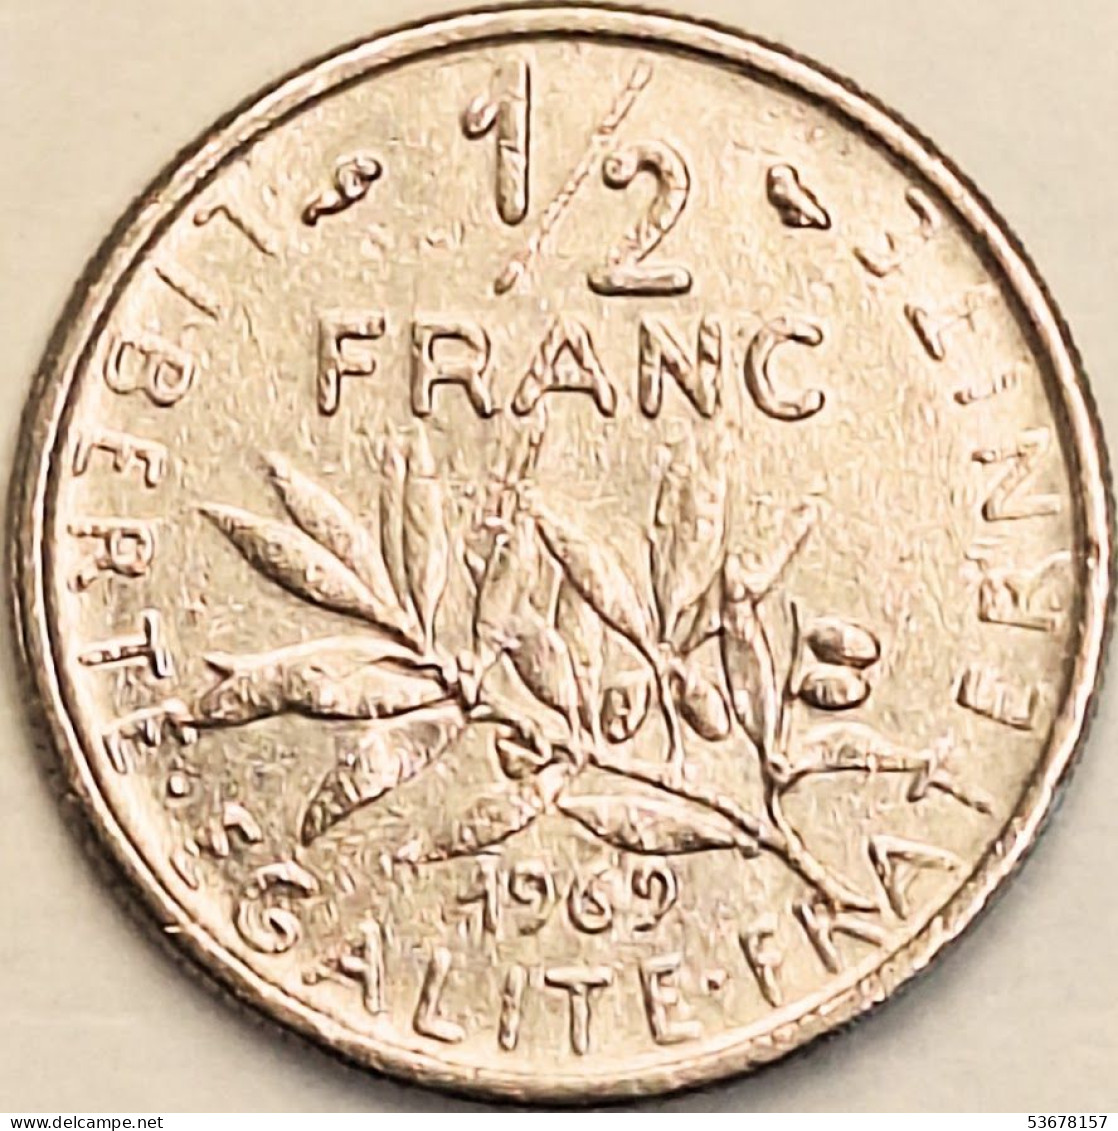 France - 1/2 Franc 1969, KM# 931.1 (#4288) - 1/2 Franc